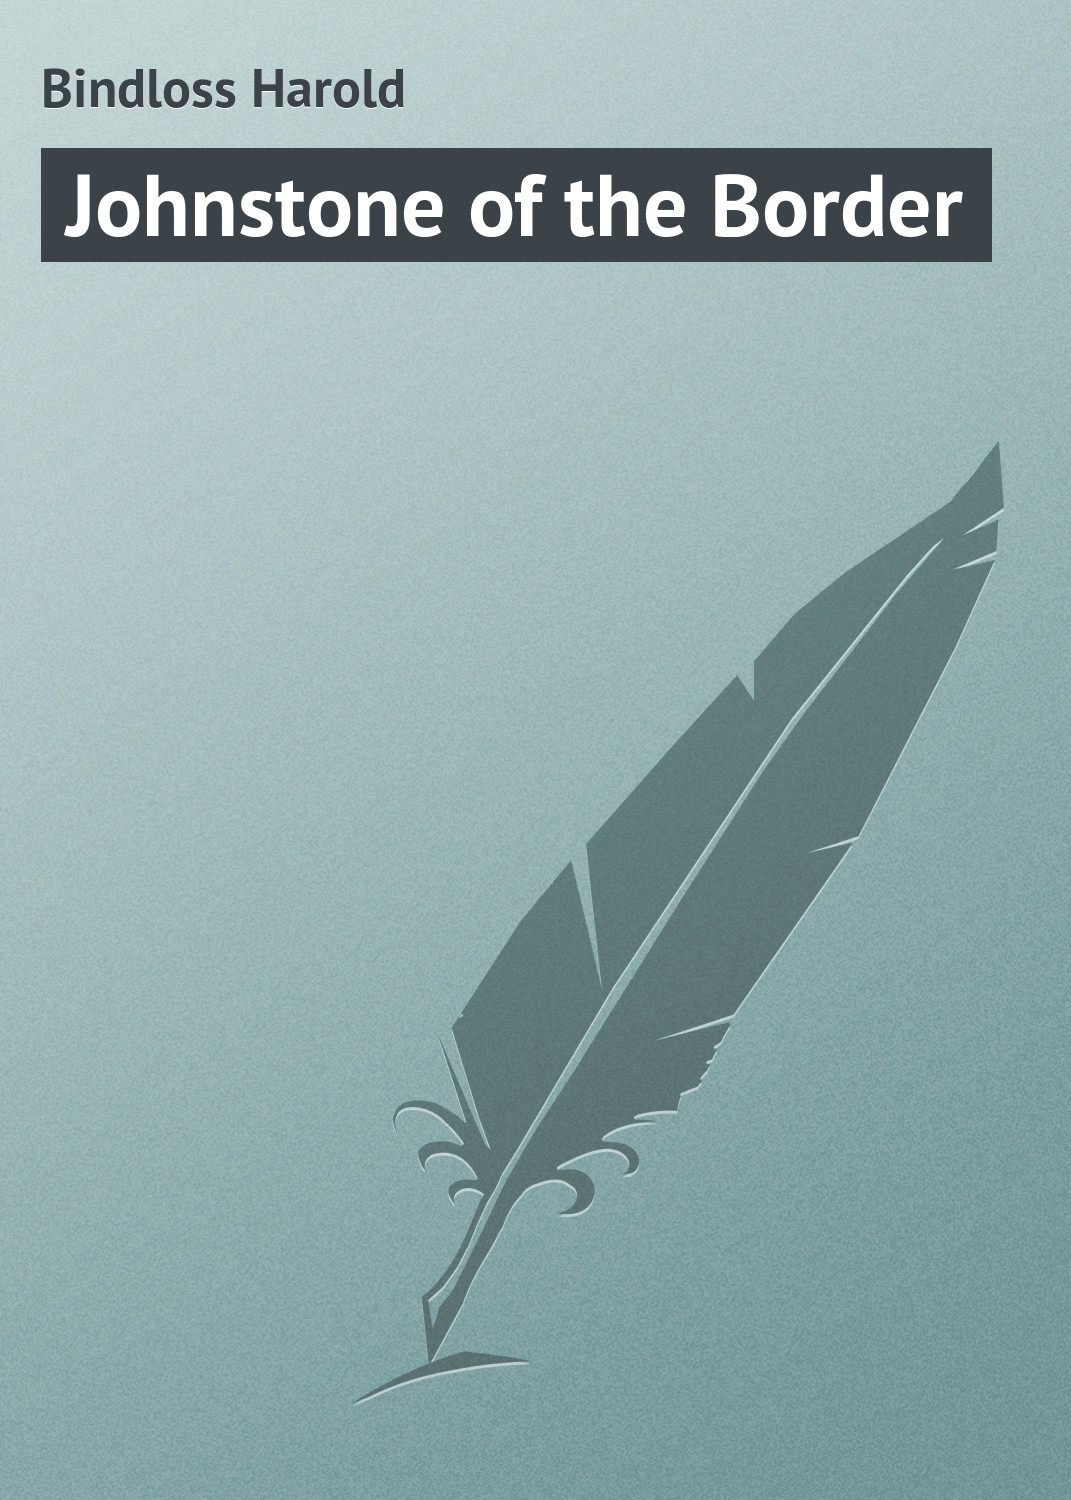 Книга Johnstone of the Border из серии , созданная Harold Bindloss, может относится к жанру Зарубежная классика. Стоимость электронной книги Johnstone of the Border с идентификатором 23166499 составляет 5.99 руб.